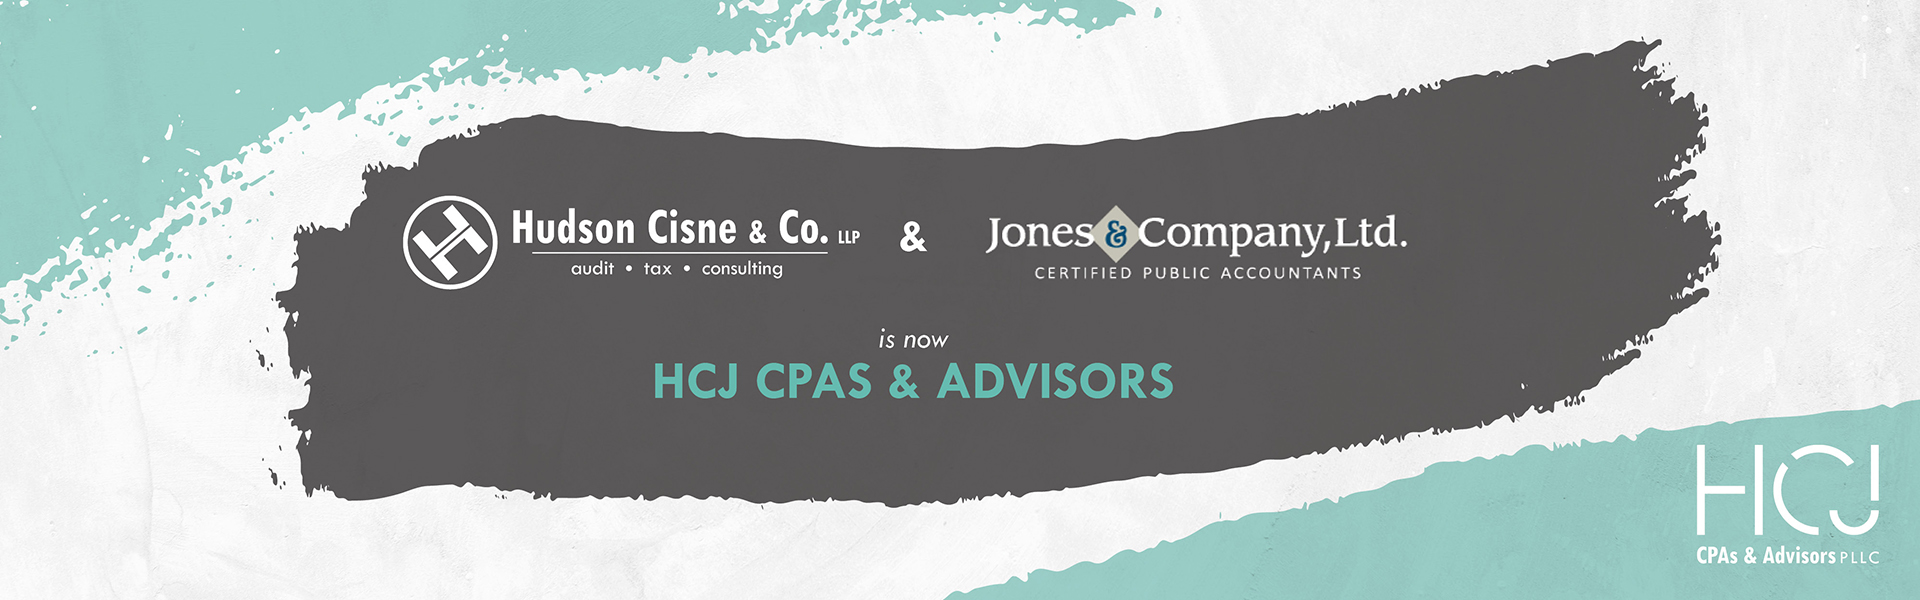 HCJ CPAs & Advisors